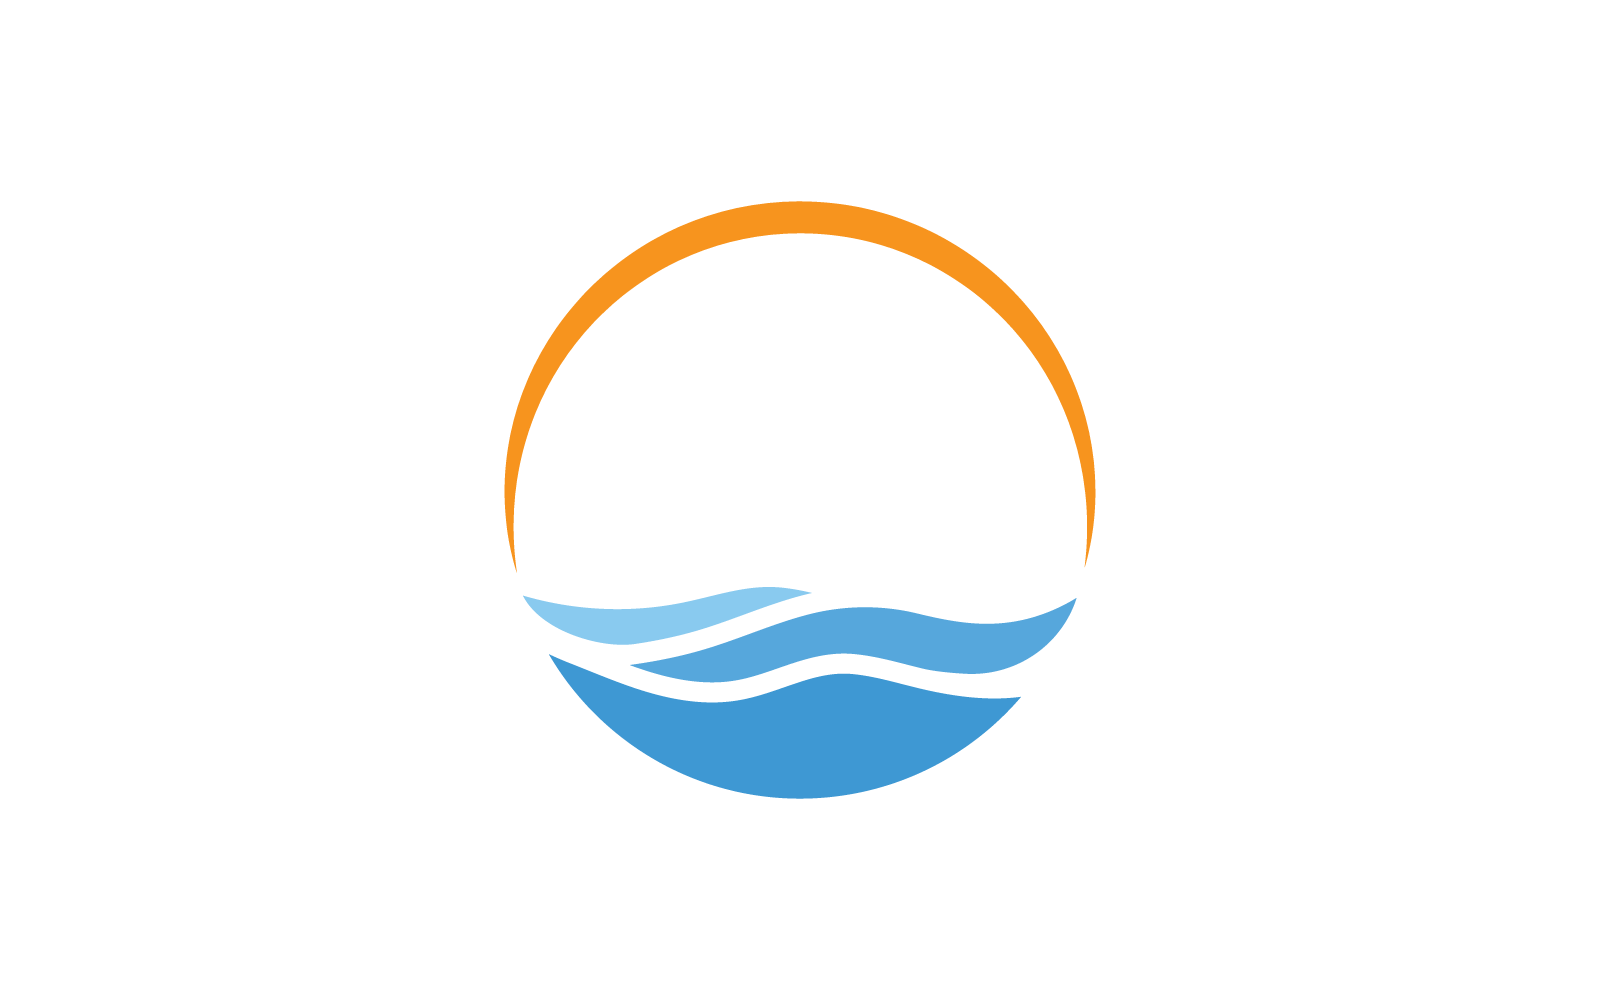 Diseño plano del logotipo de ilustración de onda de agua